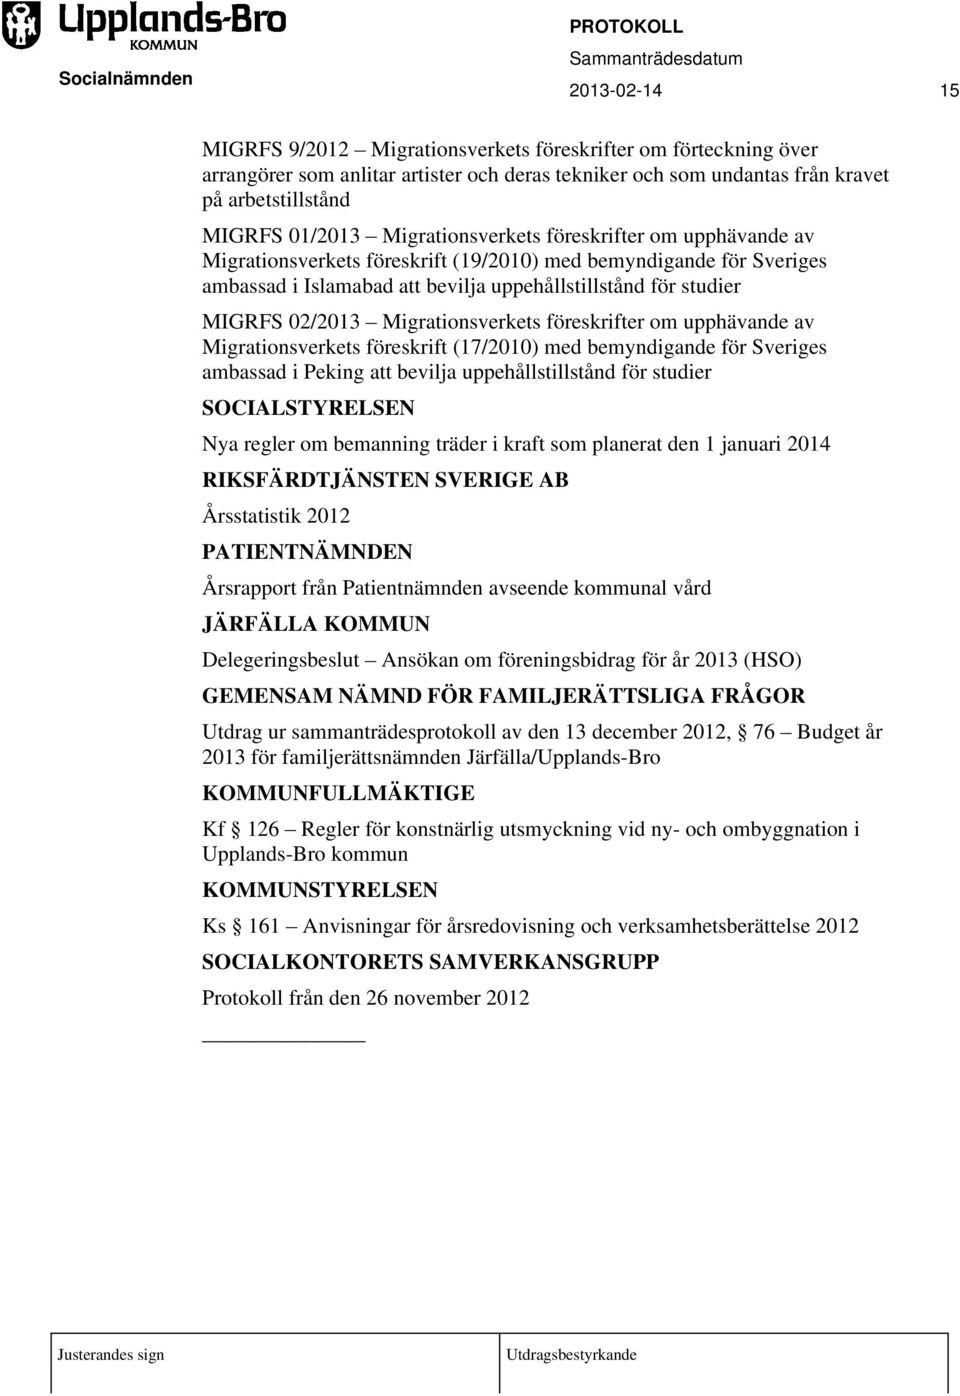 02/2013 Migrationsverkets föreskrifter om upphävande av Migrationsverkets föreskrift (17/2010) med bemyndigande för Sveriges ambassad i Peking att bevilja uppehållstillstånd för studier